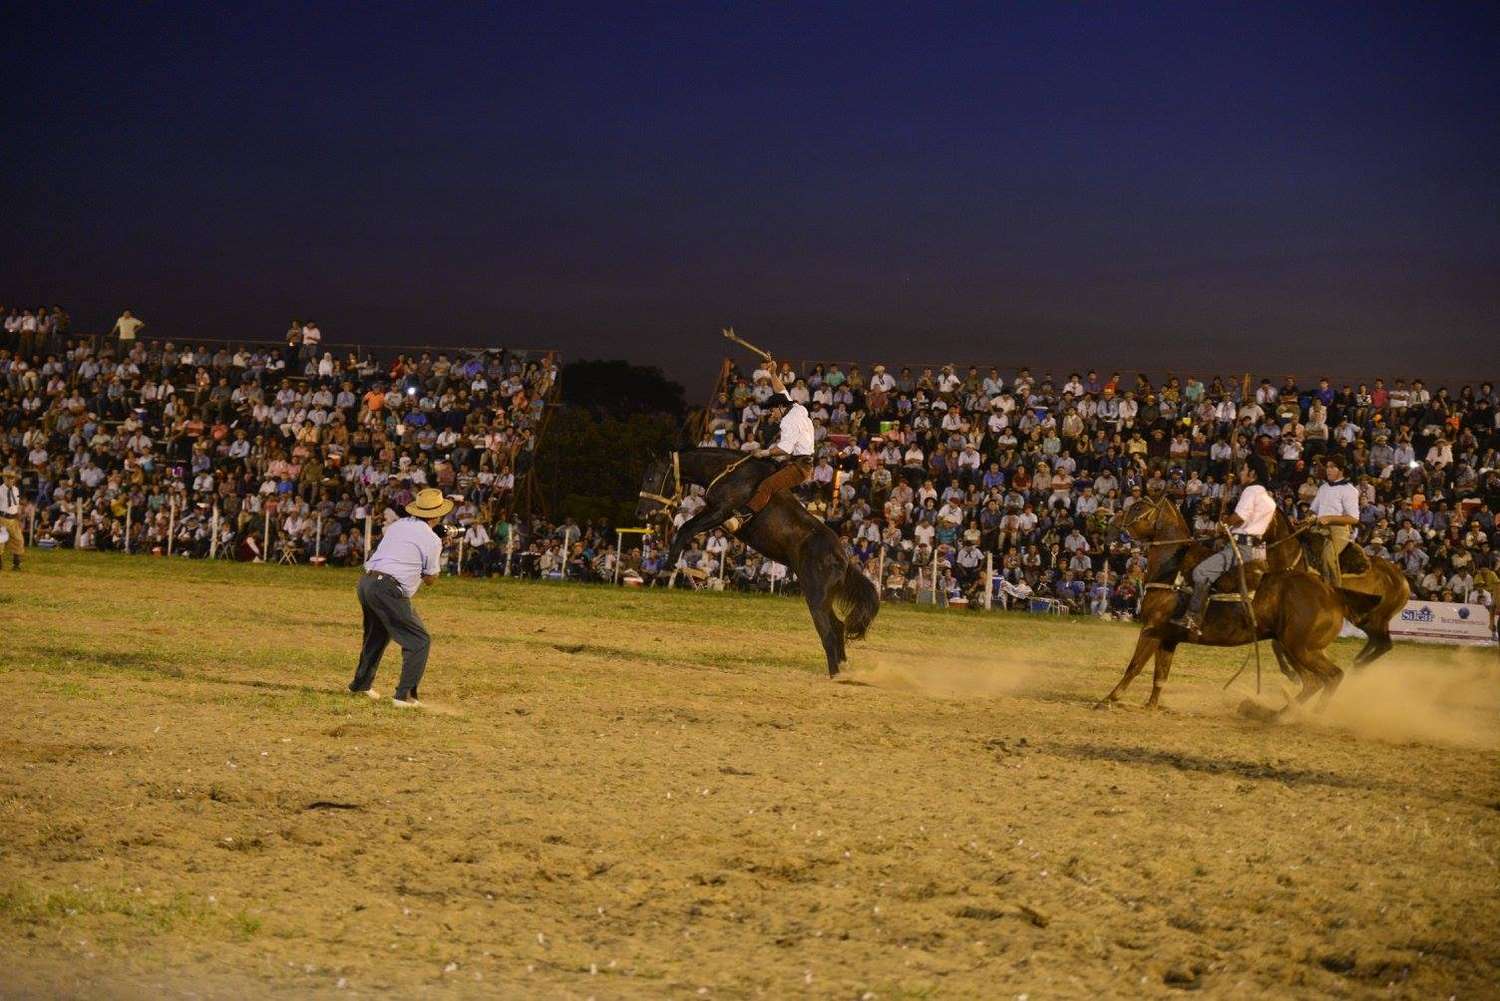 Polémica por la caída y la reacción de un caballo en el Festival de Jineteada de Diamante